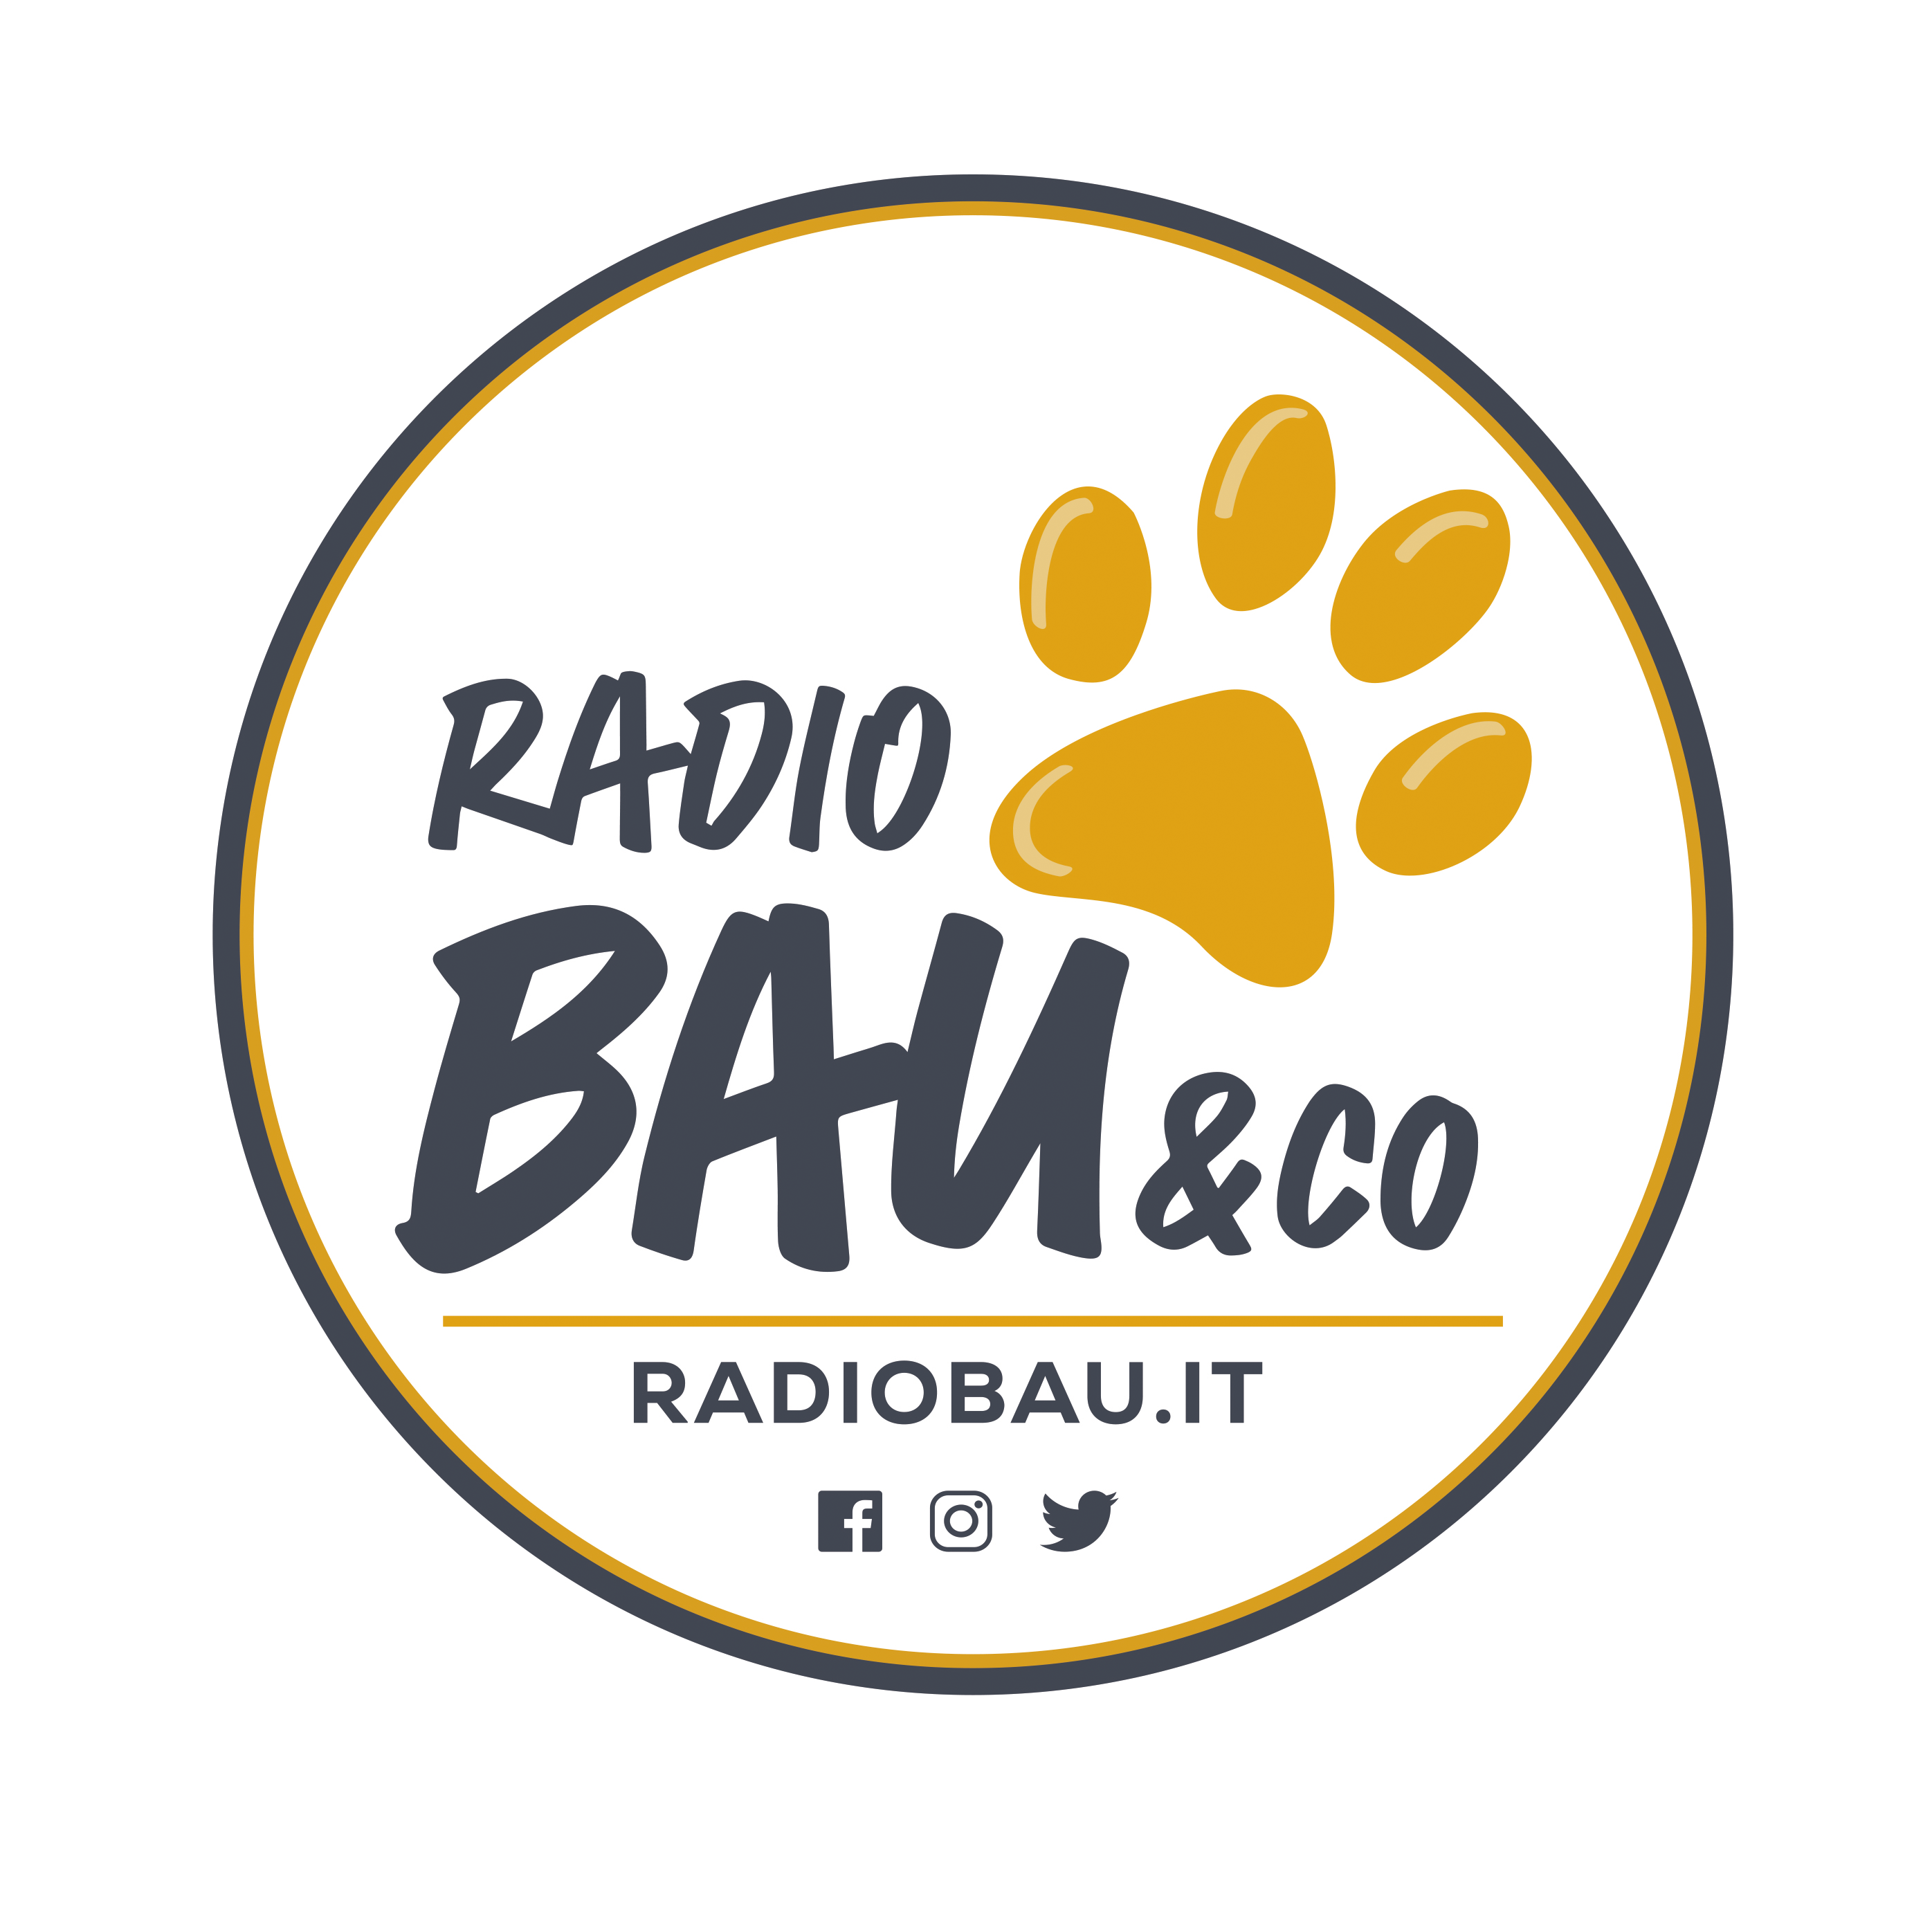 (c) Radiobau.it